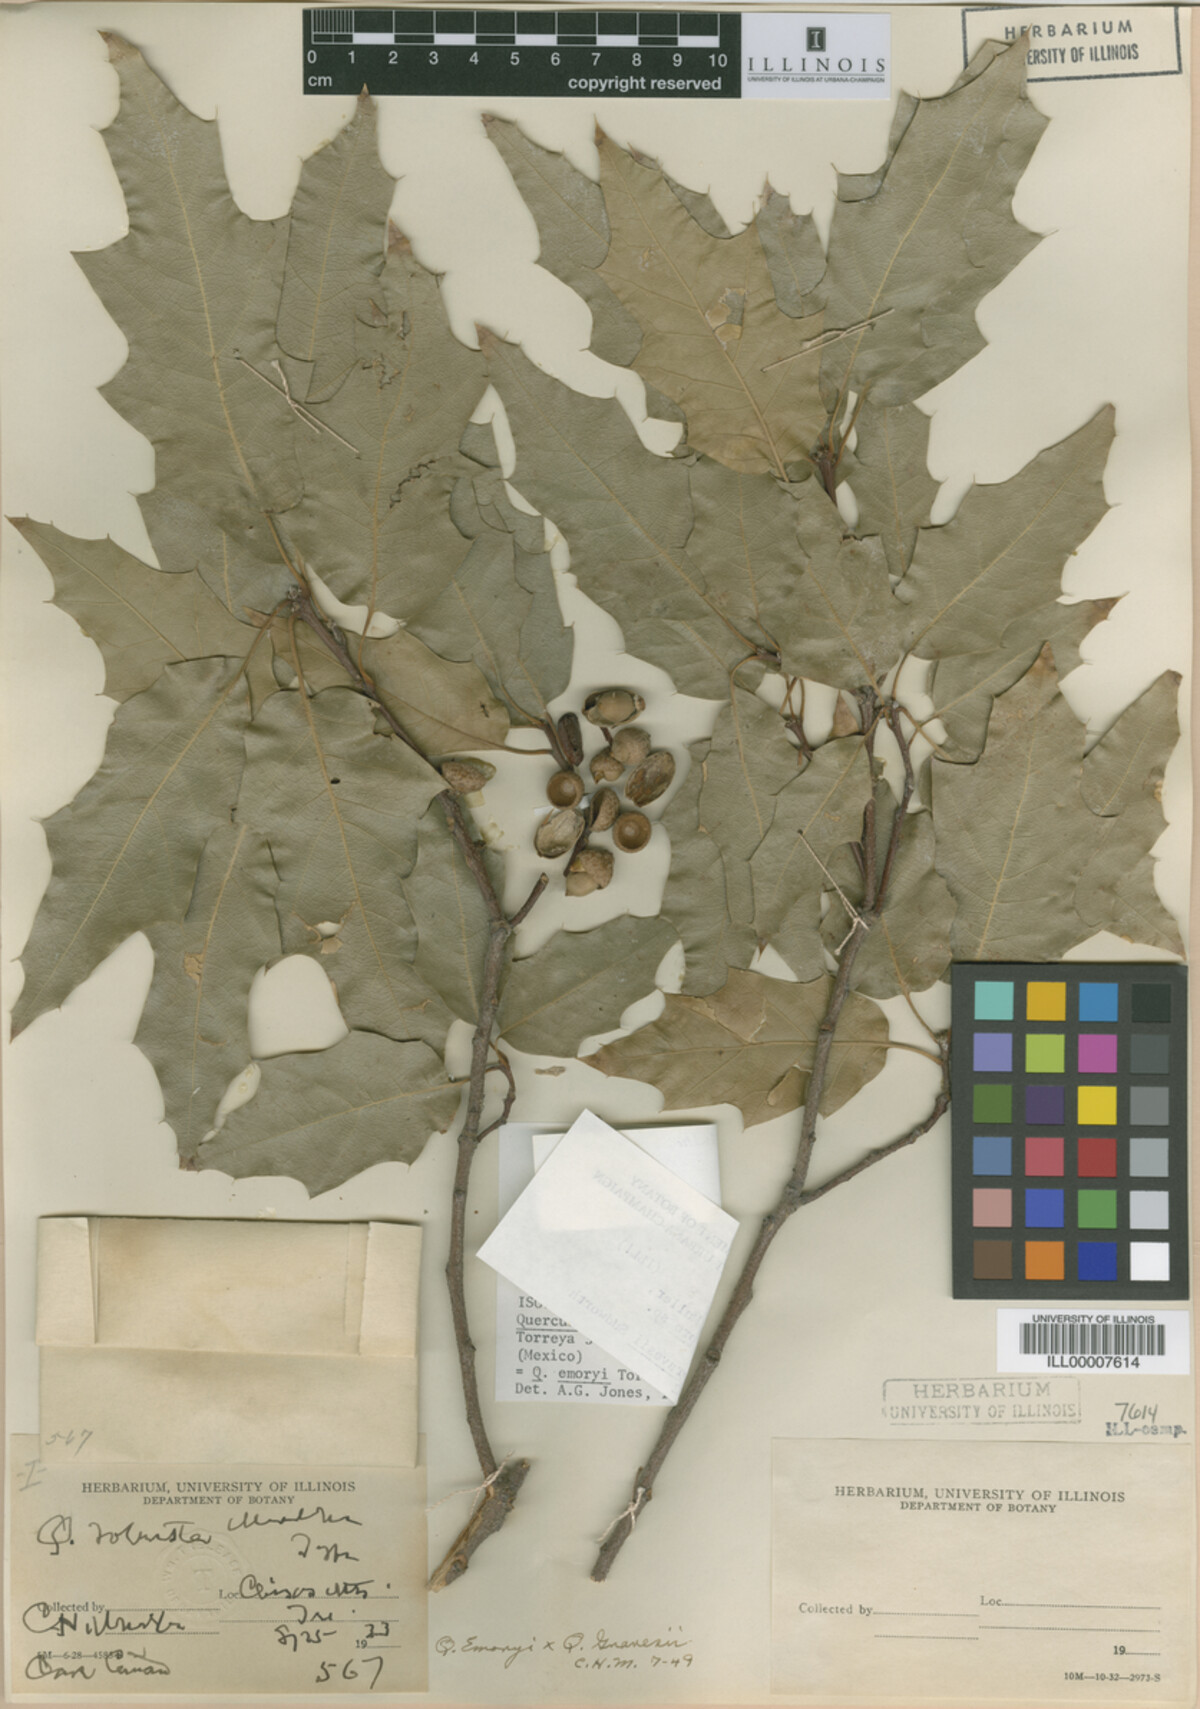 Quercus robusta image